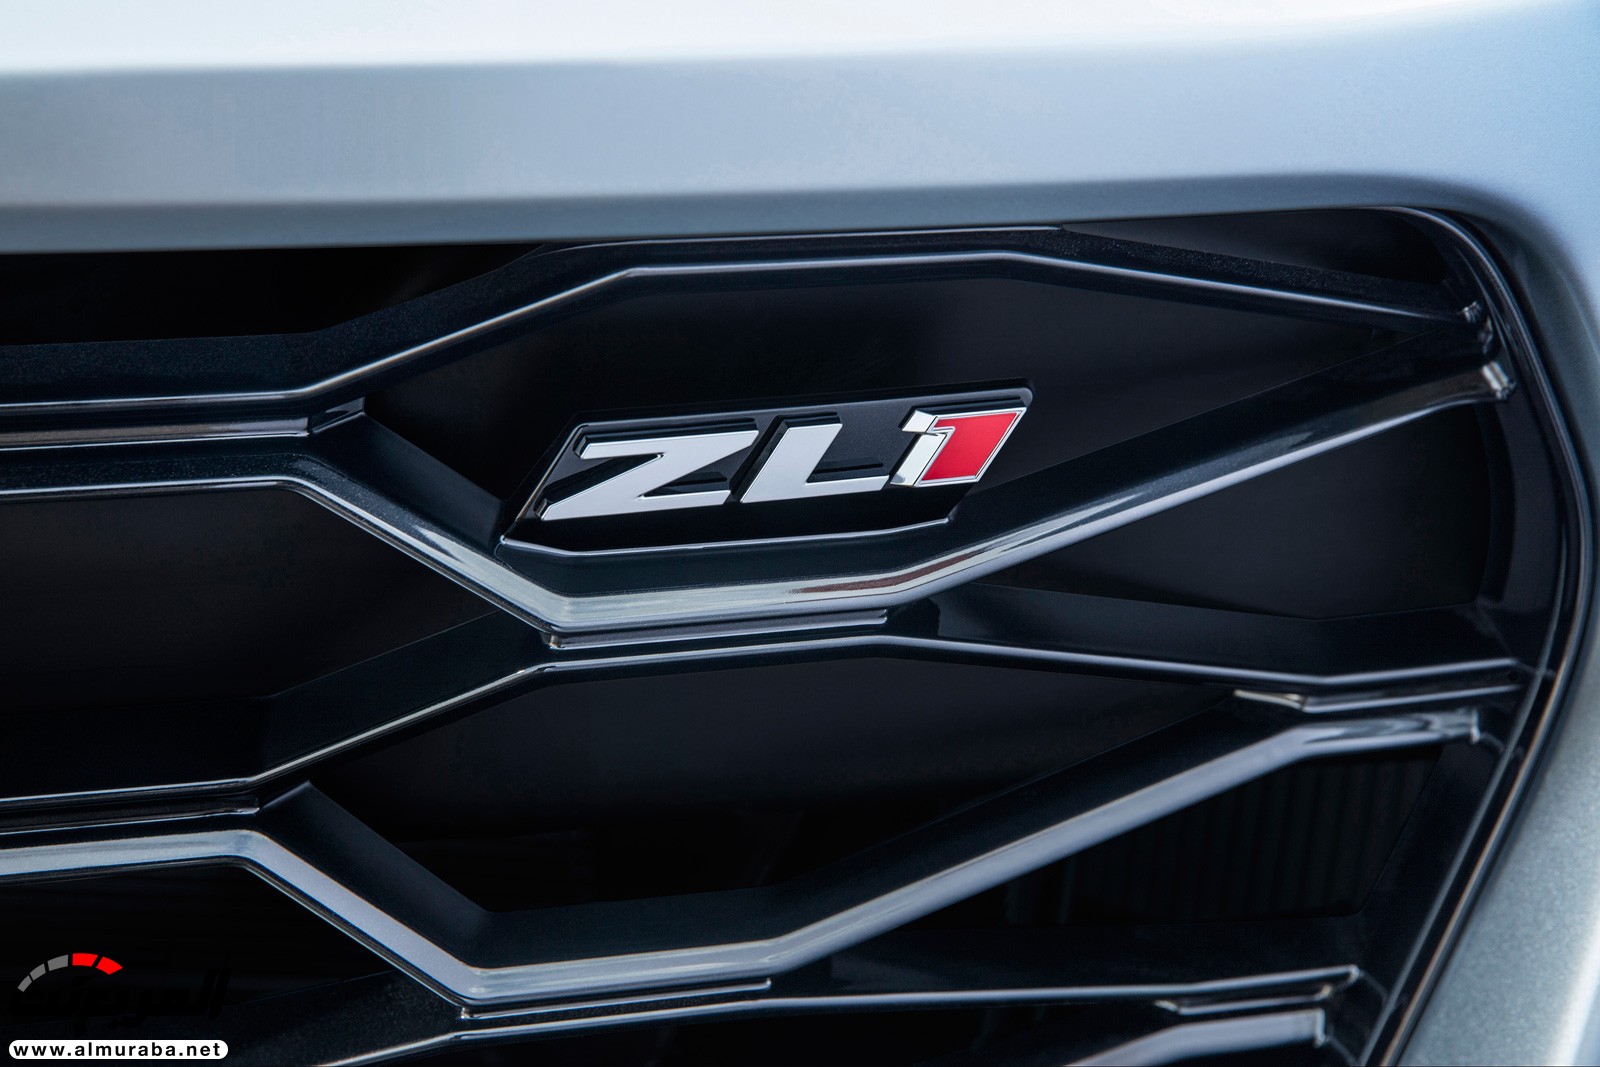 "شيفروليه" تؤكد أن الكمارو ZL1 هي سيارتها العضلية الأسرع على الإطلاق Chevrolet Camaro ZL1 31